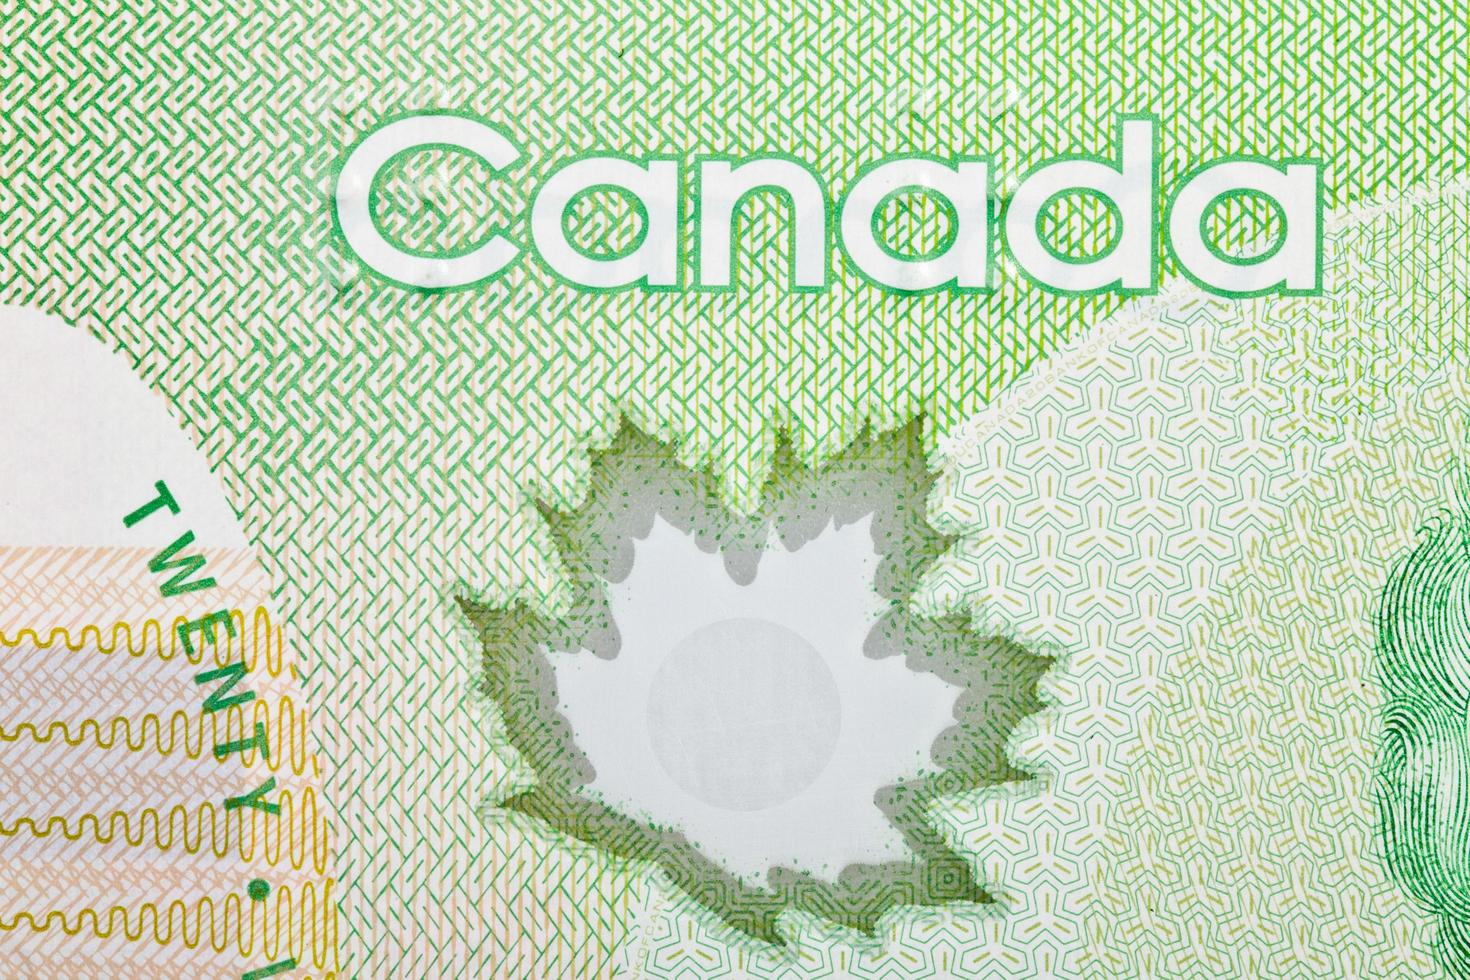 Ottawa, Canada, 13 avril 2013, gros plan extrême de nouveaux billets de vingt dollars en polymère photo